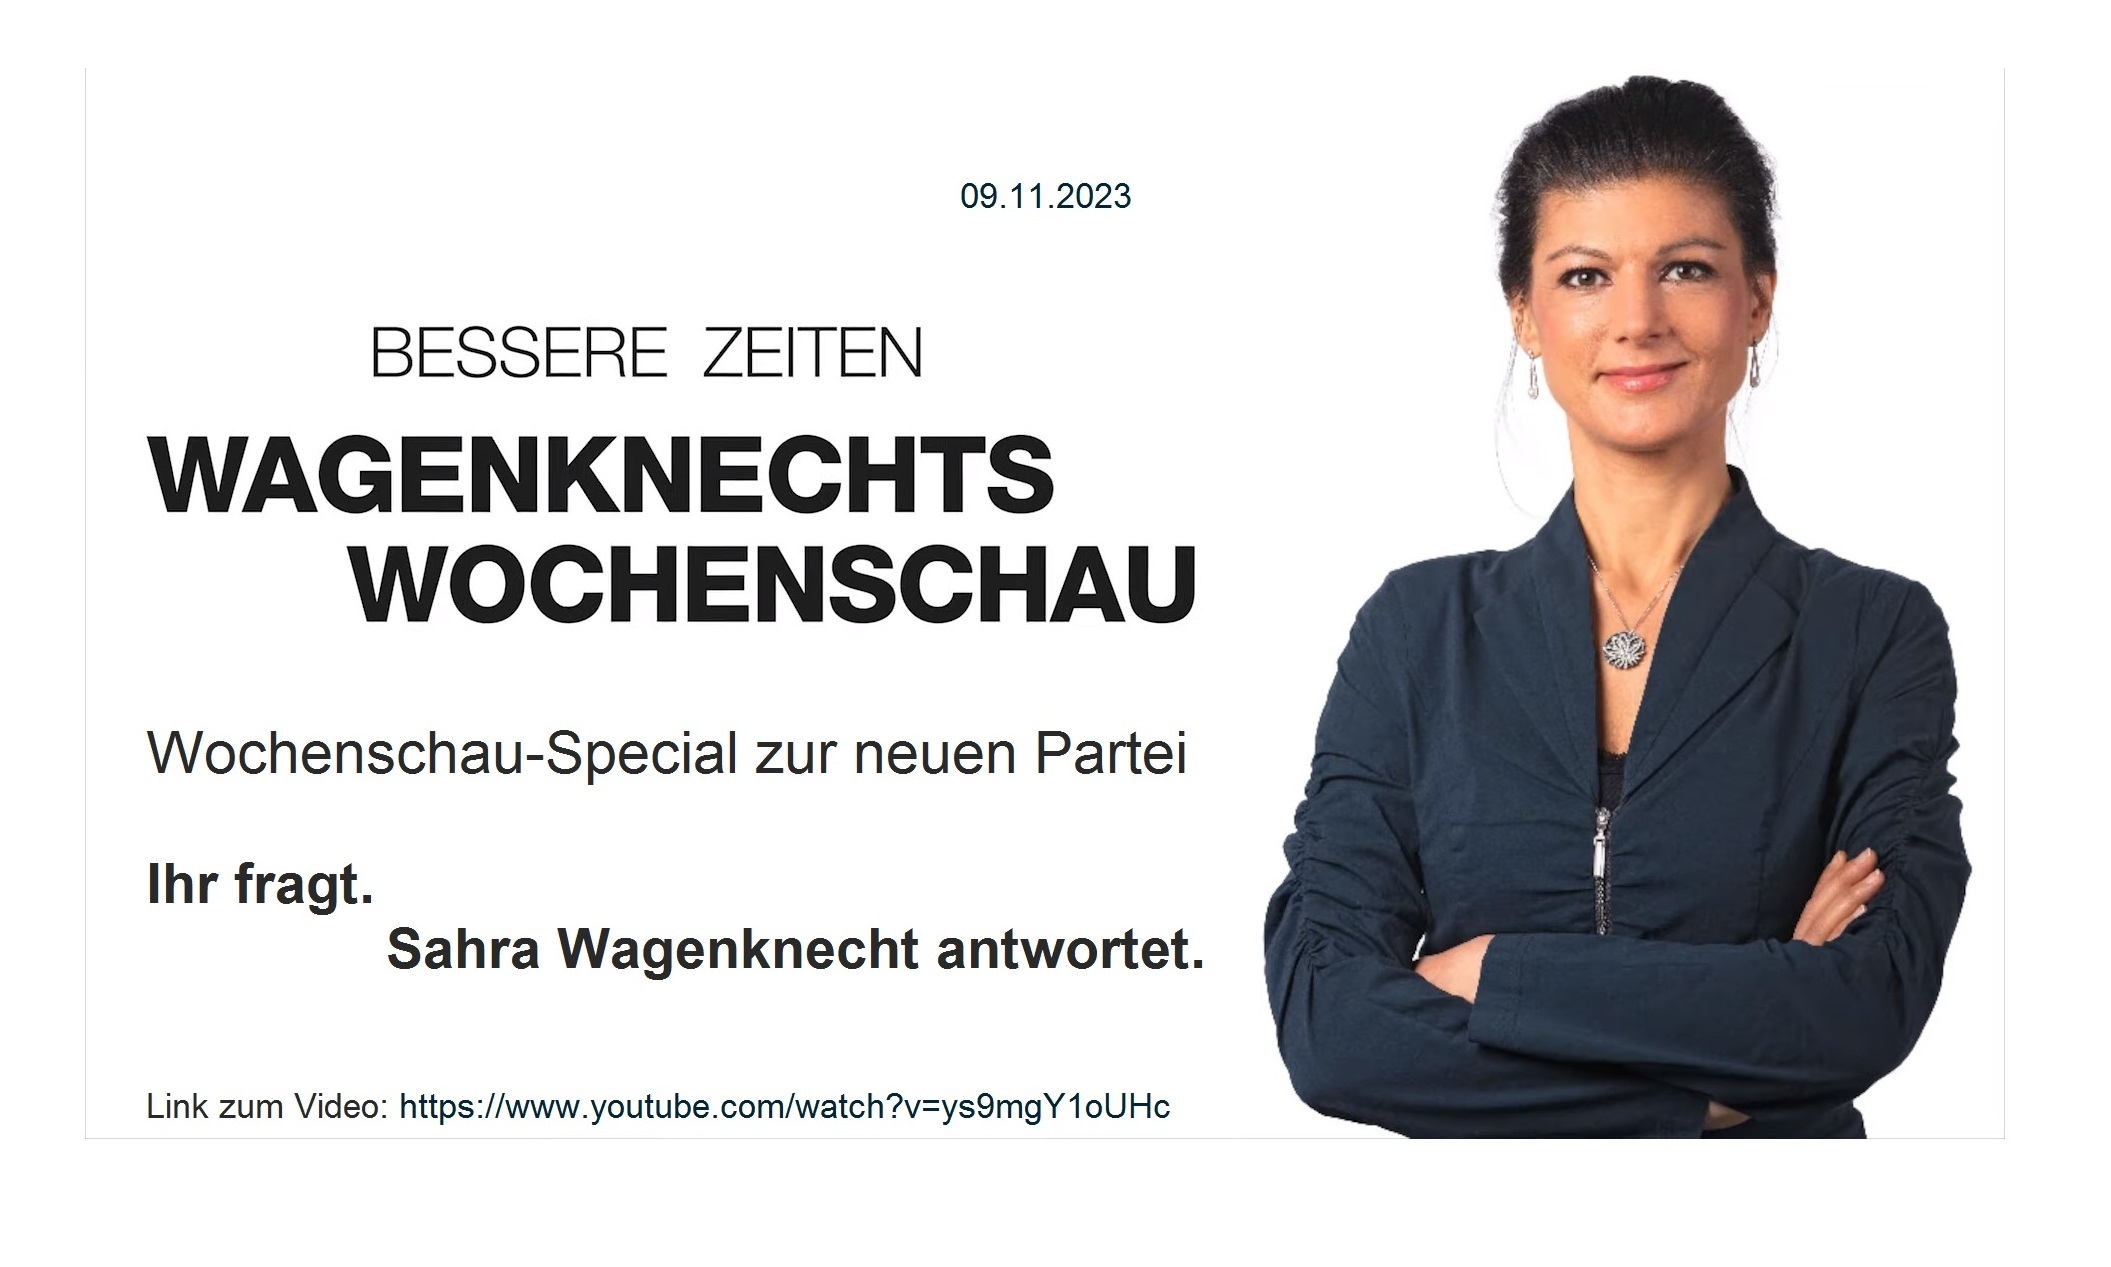 Aus dem Posteingang von Dr. Sahra Wagenknecht (MdB) - Team Sahra - 09.11.2023 - Zur neuen Partei: Ihr fragt - ich antworte - Wagenknechts Wochenschau - Link zum Video: https://www.youtube.com/watch?v=ys9mgY1oUHc 